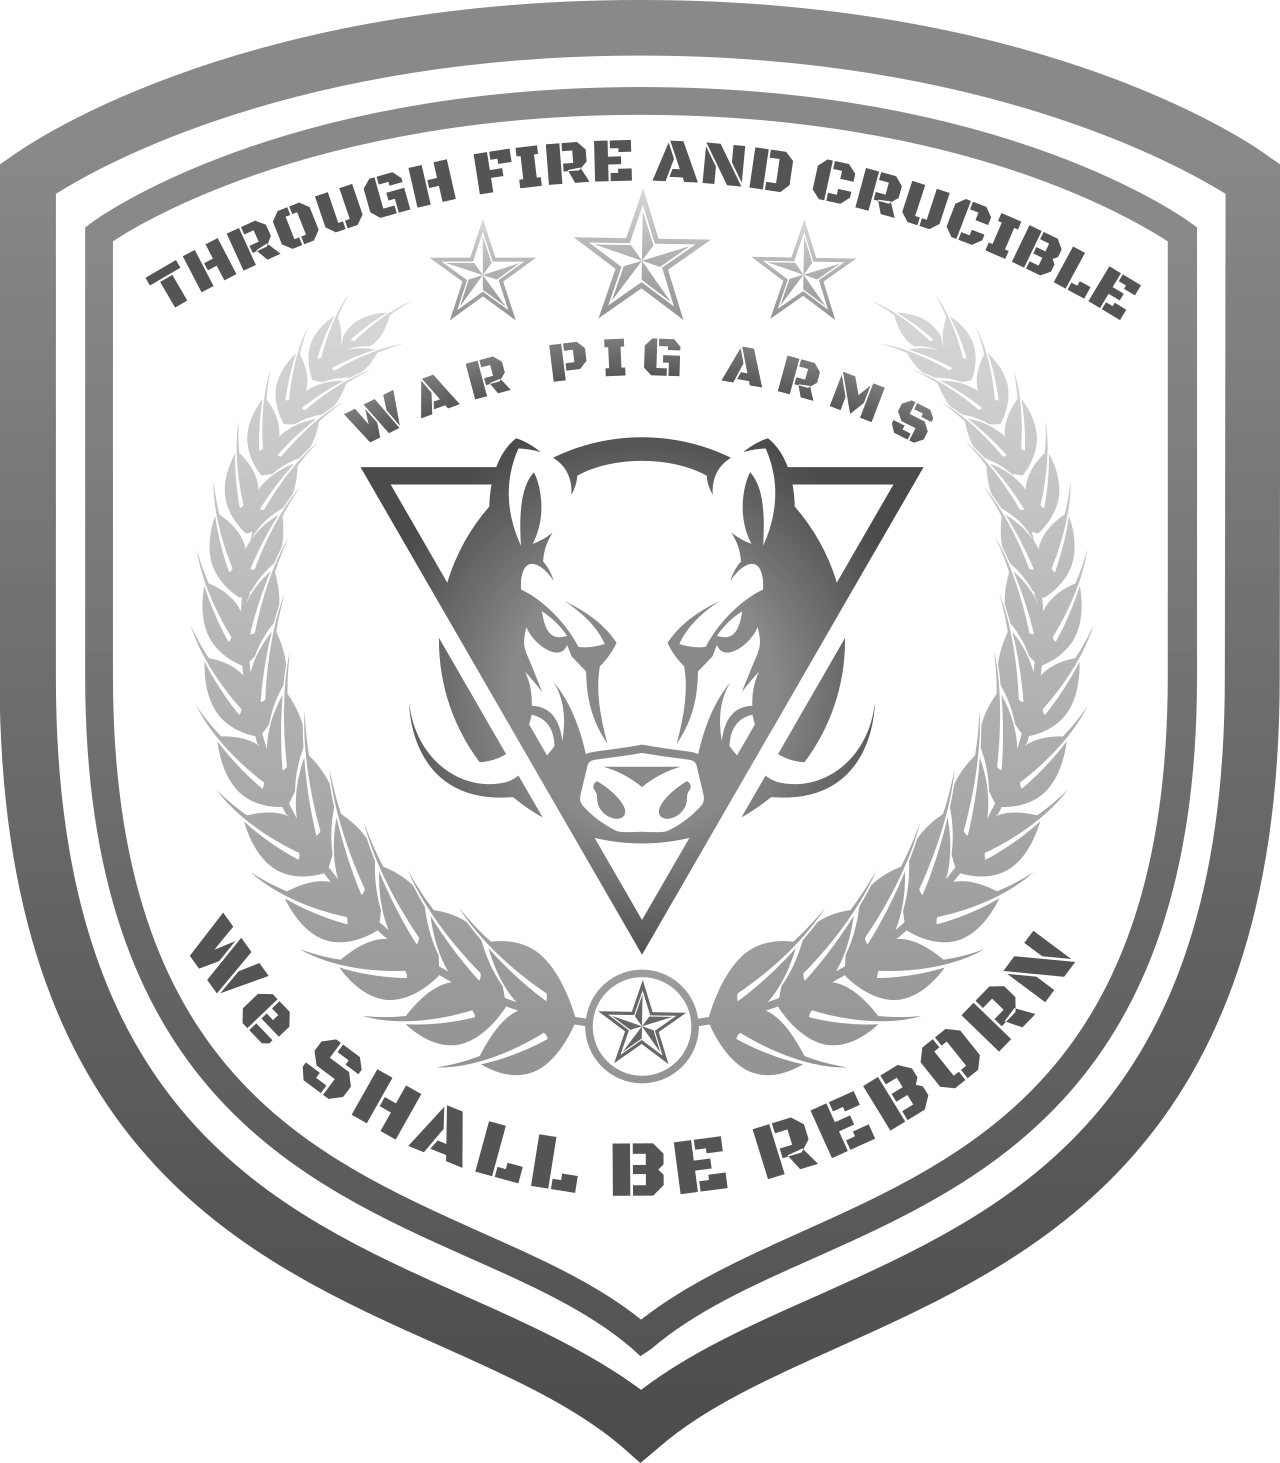 WAR PIG ARMS's logo